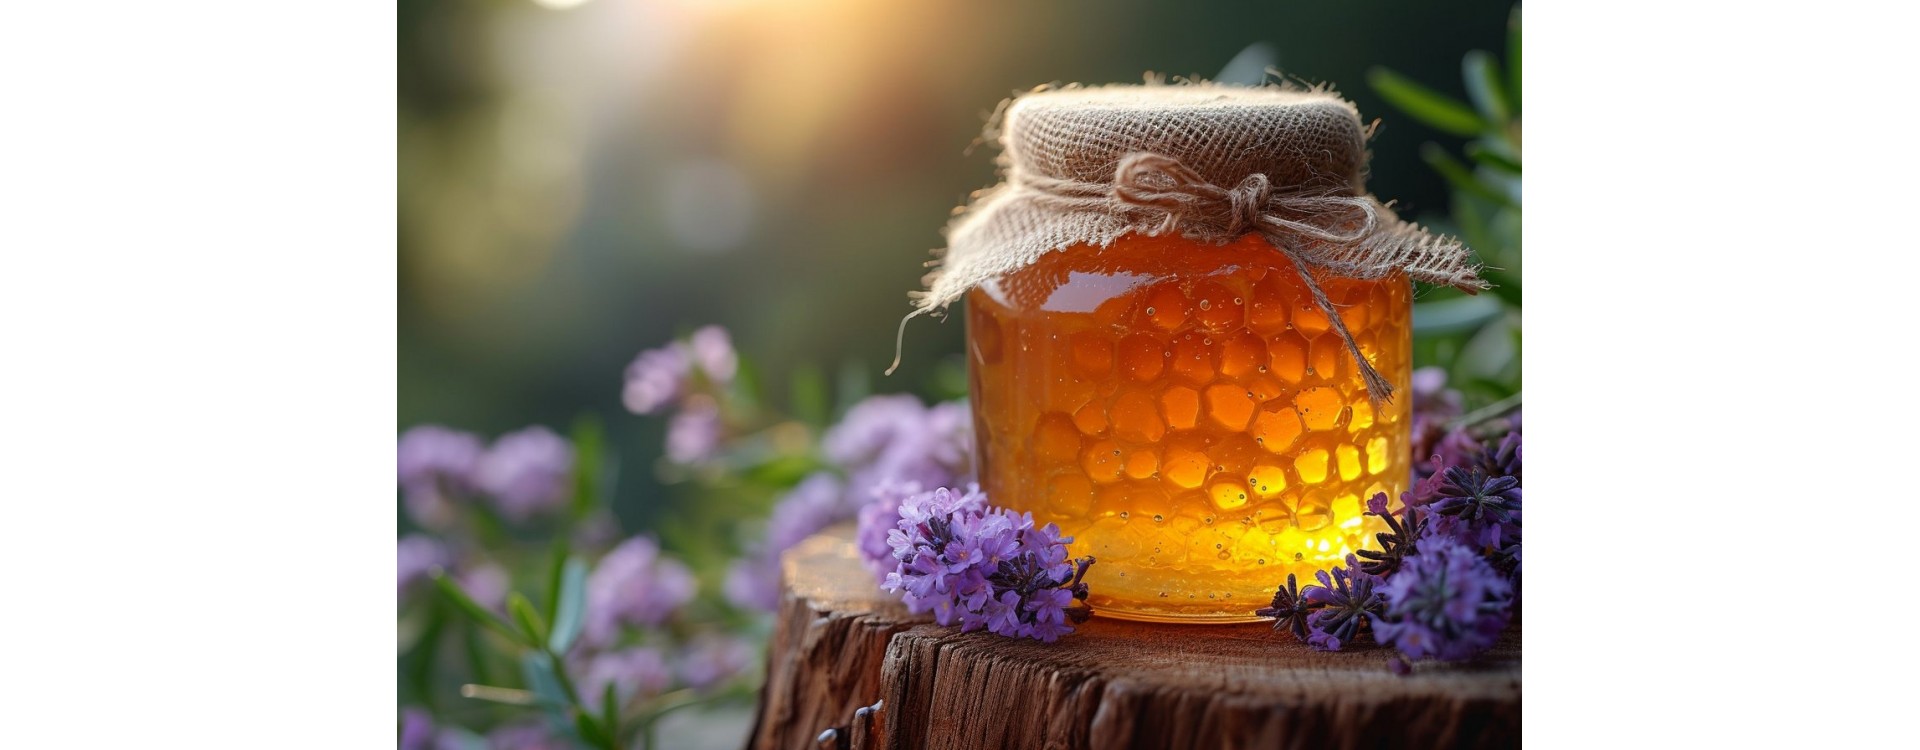 7 façons d'utiliser le miel pour se refaire une beauté